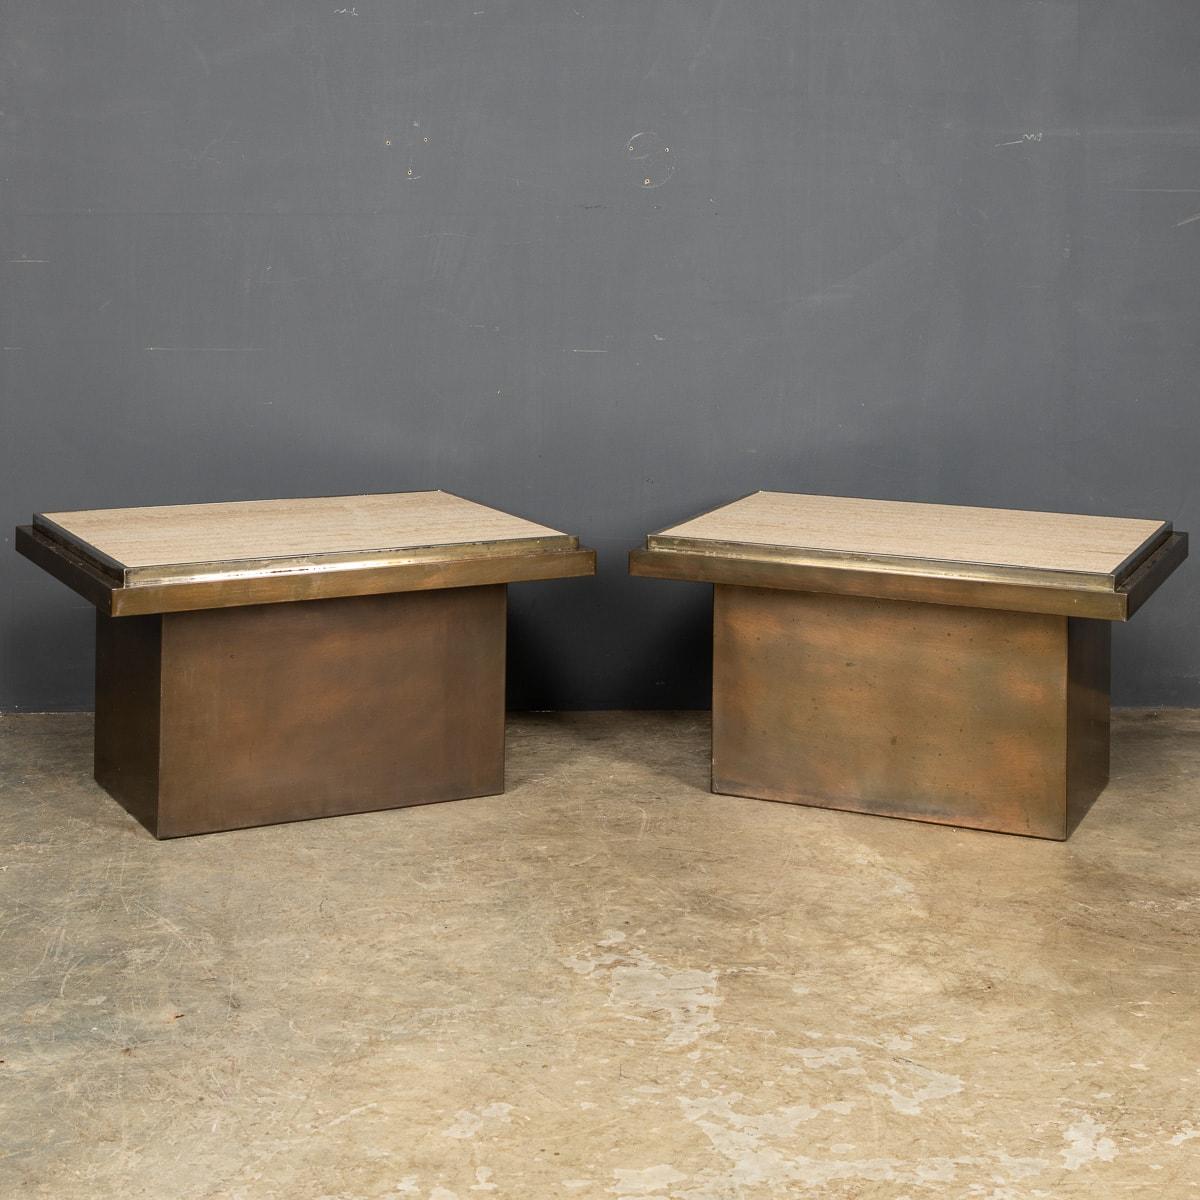 Une superbe paire de tables d'appoint avec des plateaux en marbre travertin italien encadrés de chrome sur une base en bronze fabriquée selon les normes les plus strictes par Belgo Chrome.

CONDITION
En très bon état - aucun